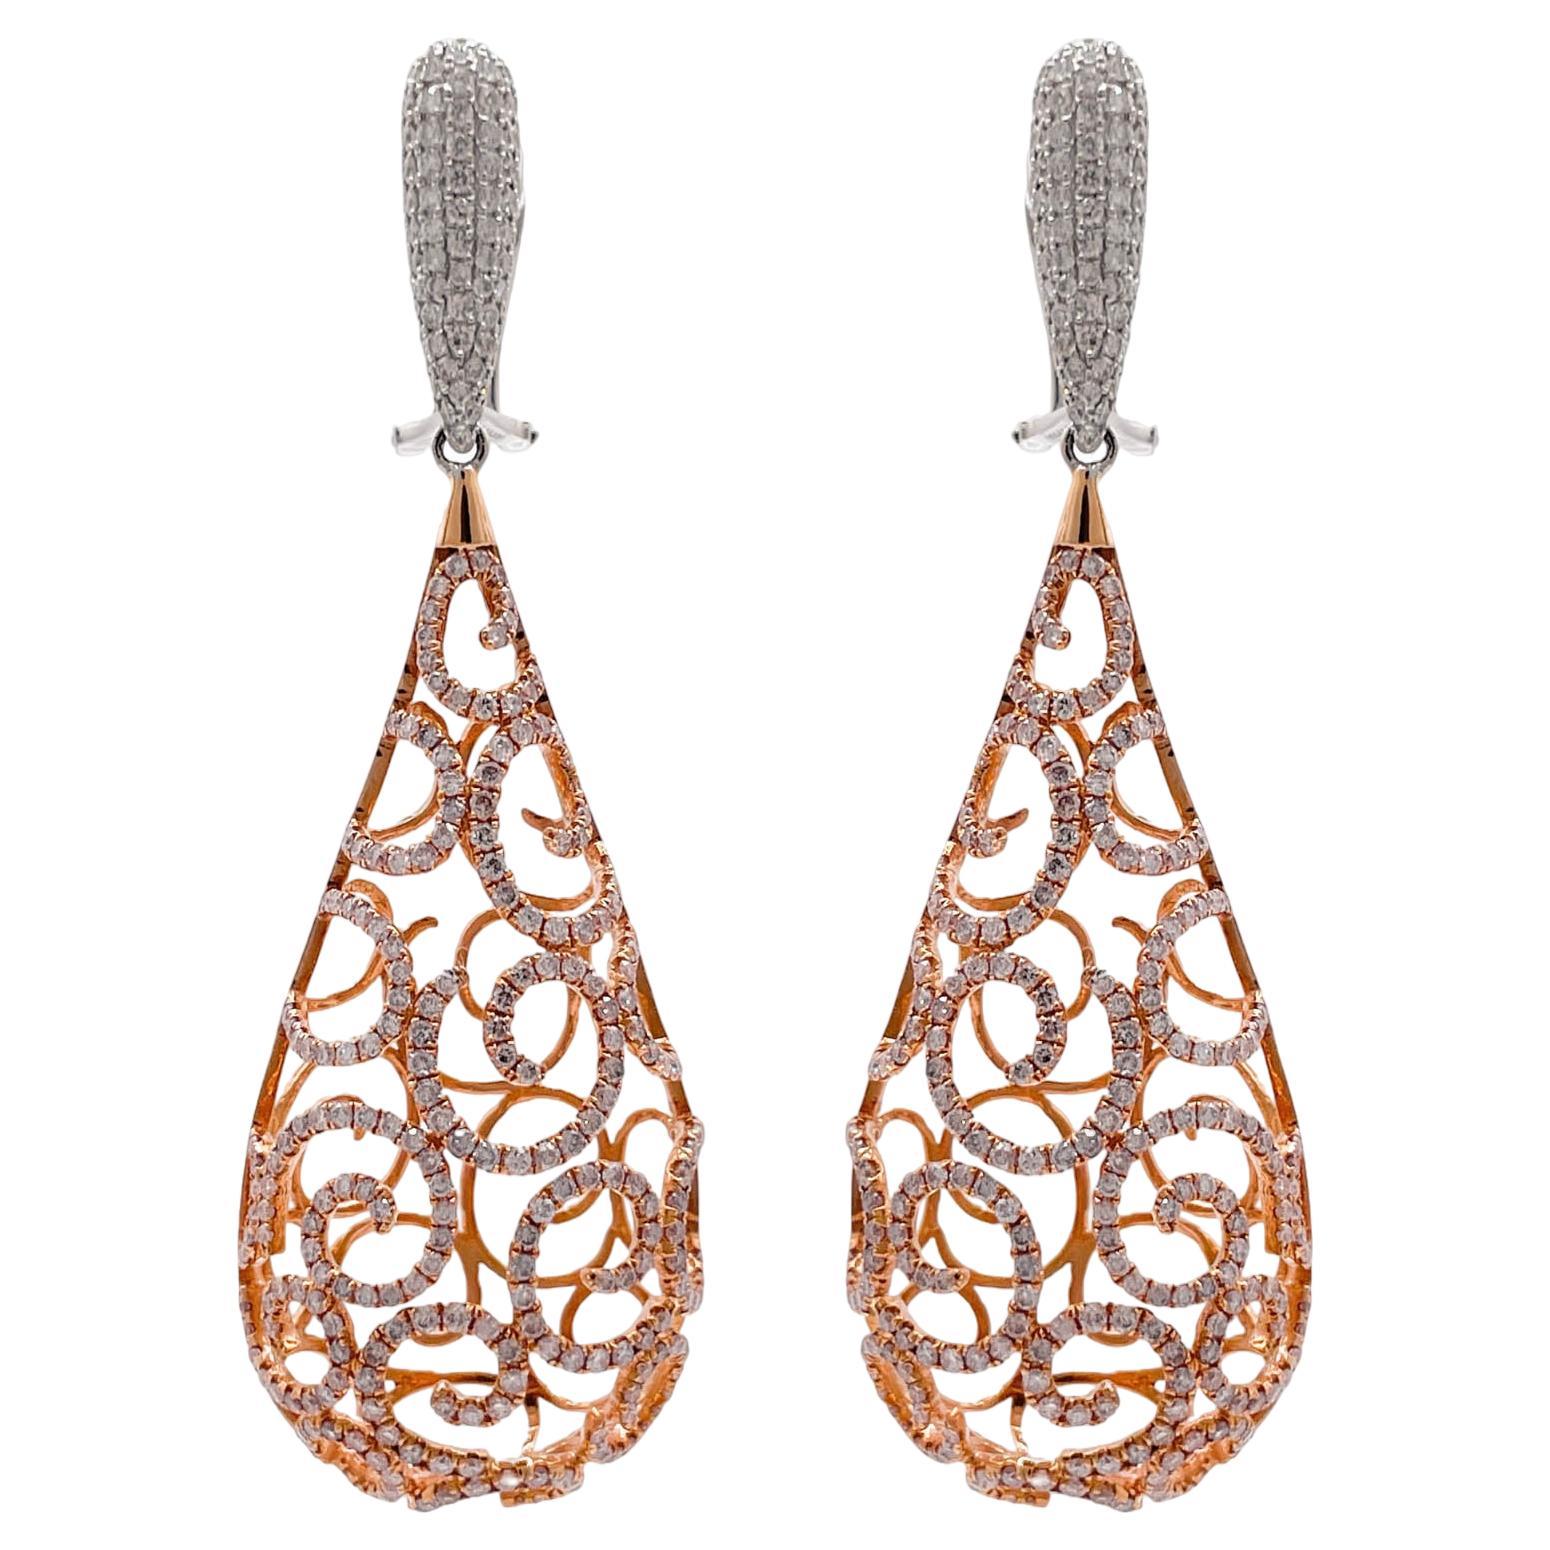 Boucles d'oreilles pendantes Jay Feders en or bicolore 18k et diamants